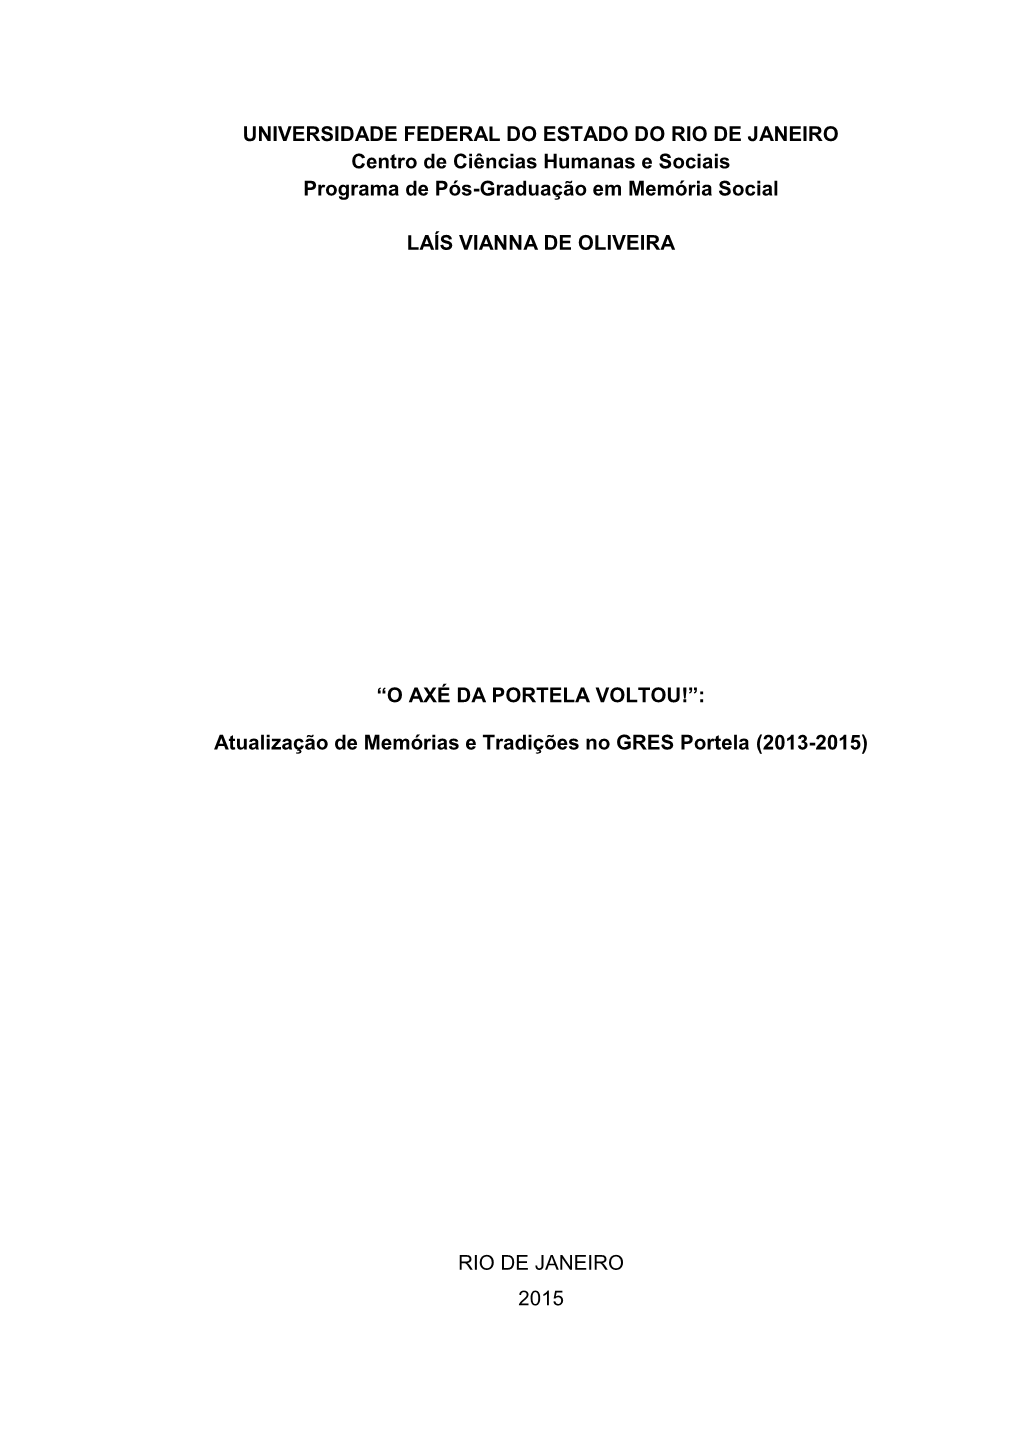 Atualização De Memórias E Tradições No GRES Portela (2013-2015)